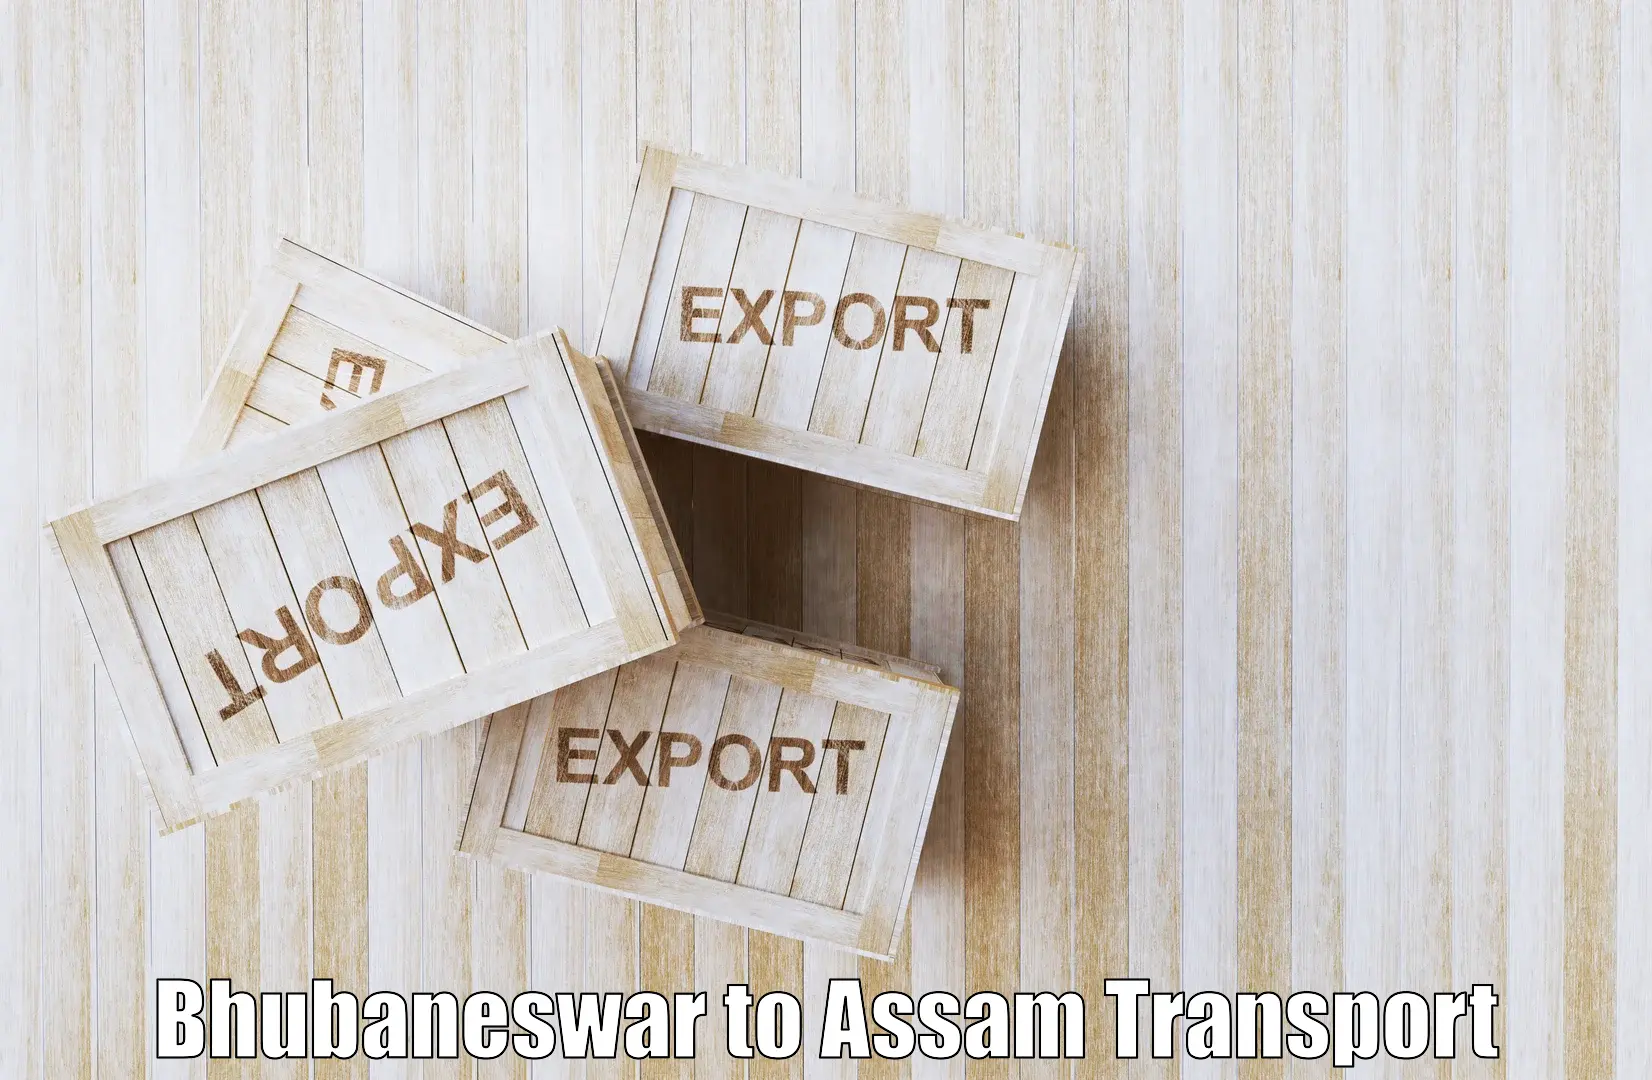 Express transport services Bhubaneswar to Assam